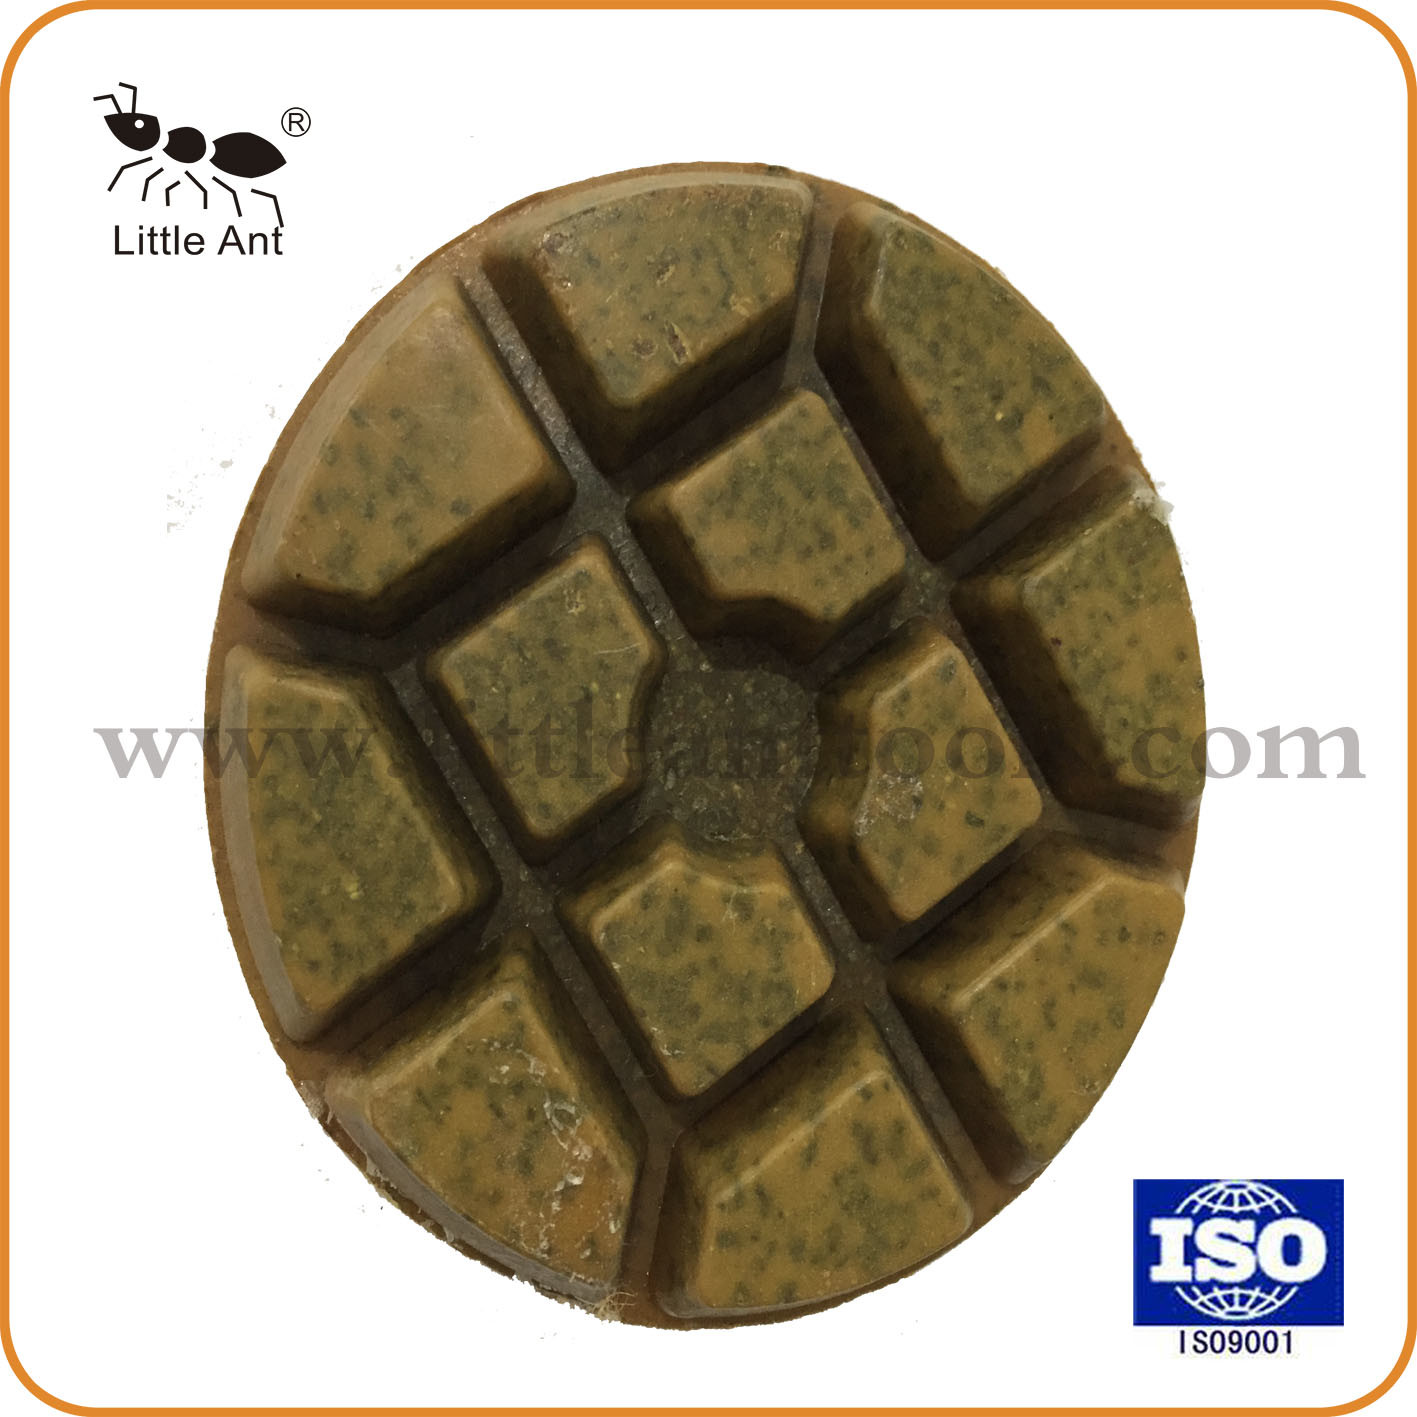 China Top Brand Diamond Resin Floor Concrete Polishing Pad Durable Top Quality Polishing Tool